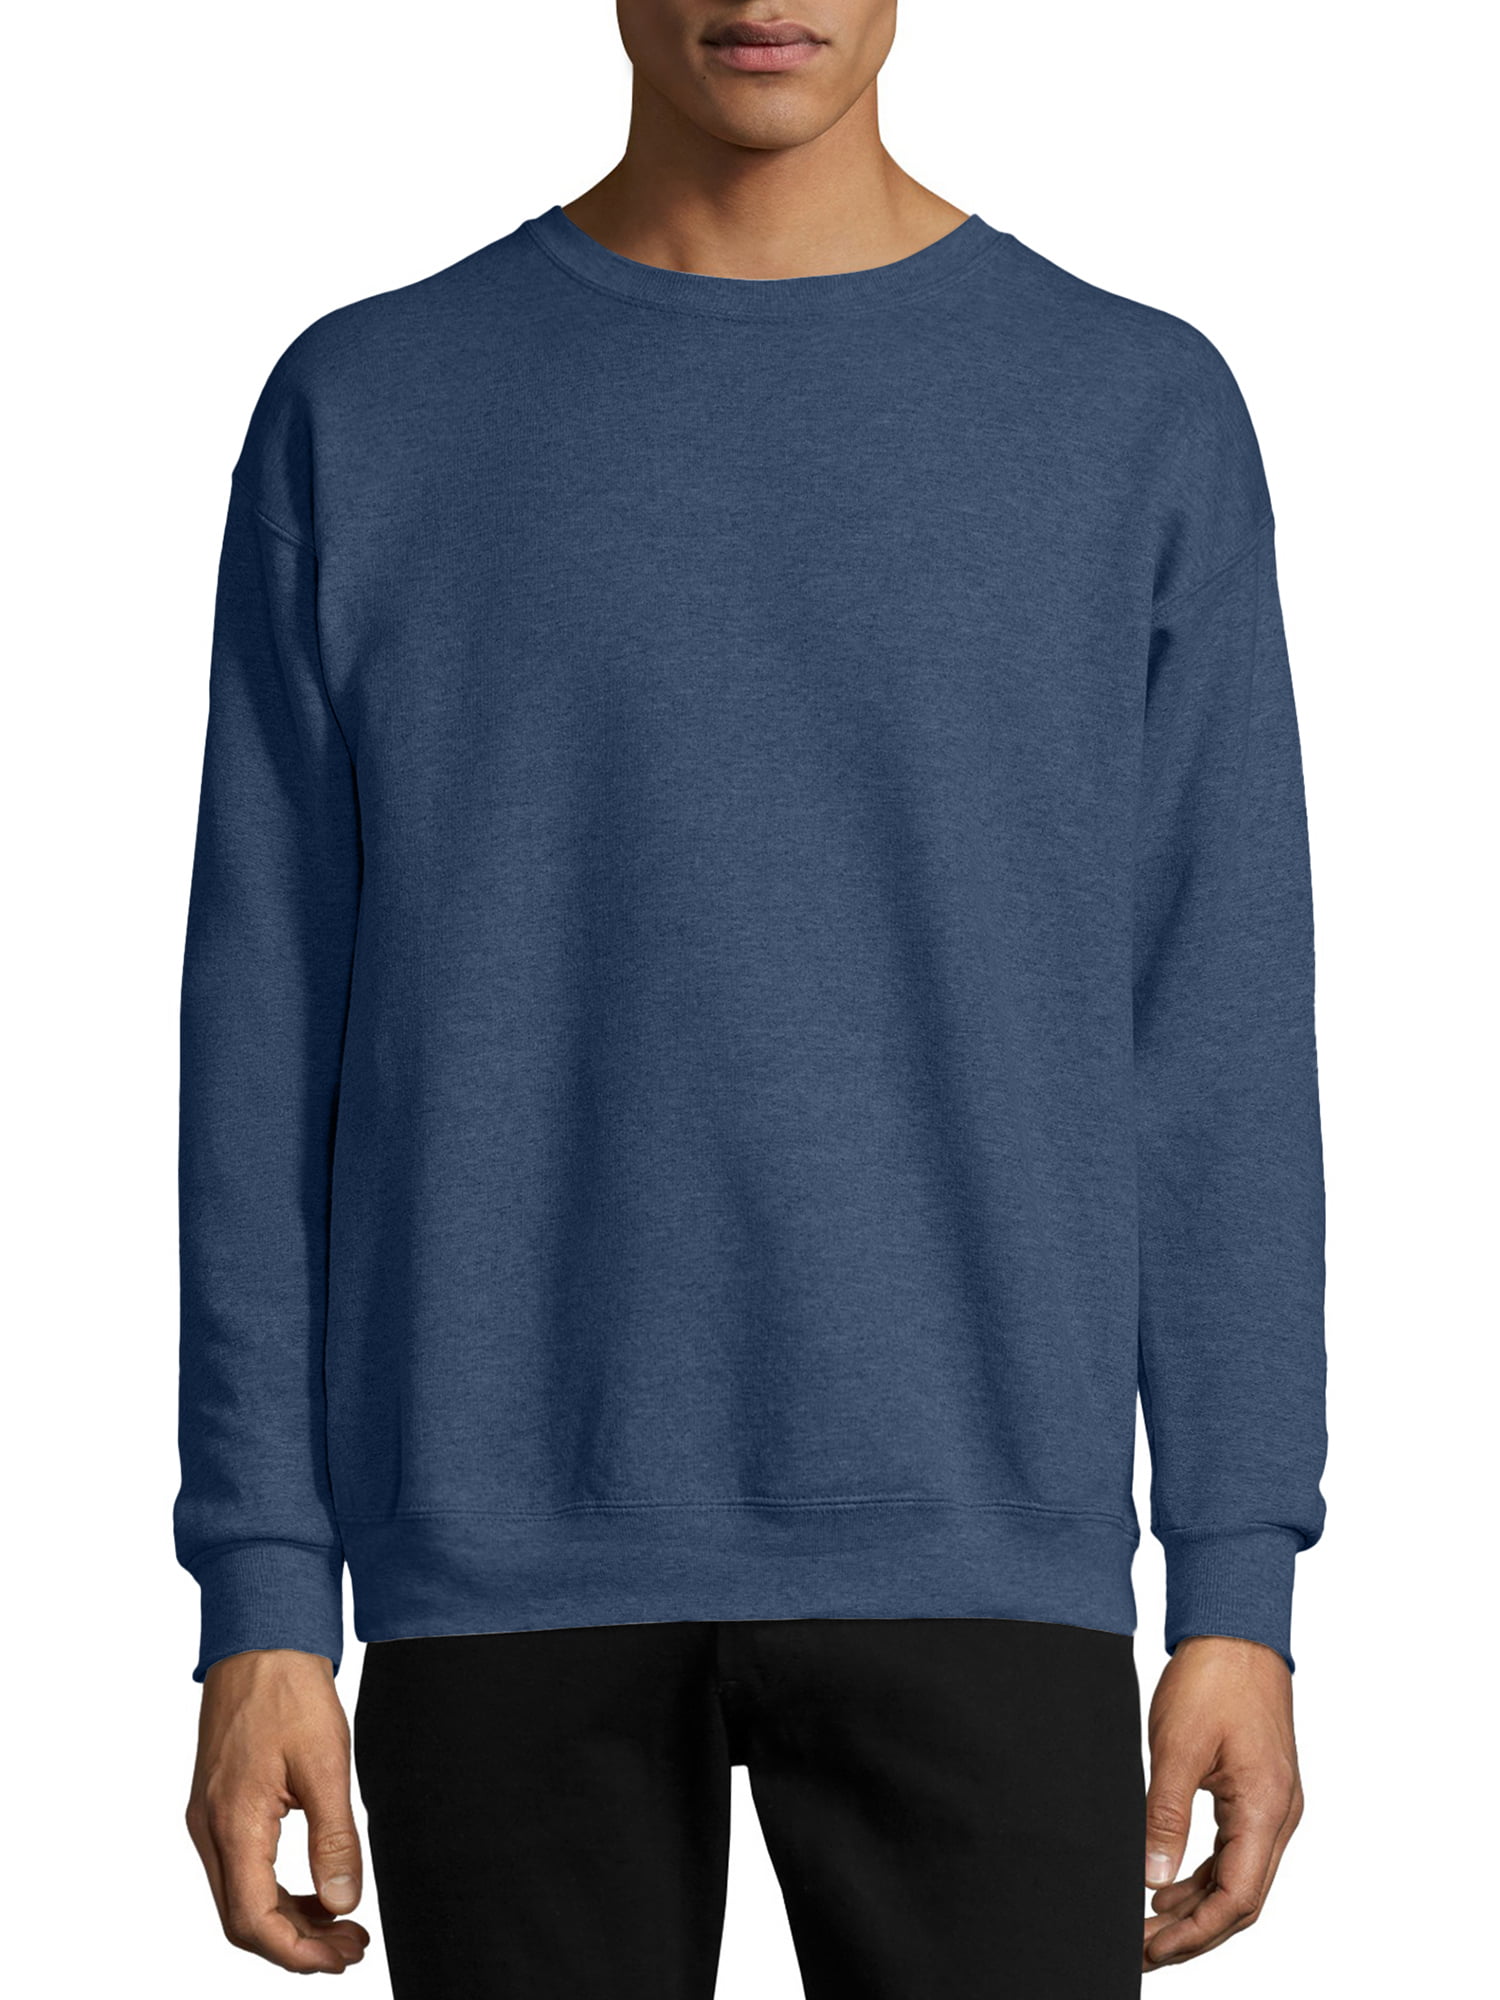 Hanes - Hanes Men's and Big Men's Ecosmart Fleece Sweatshirt, up to ...